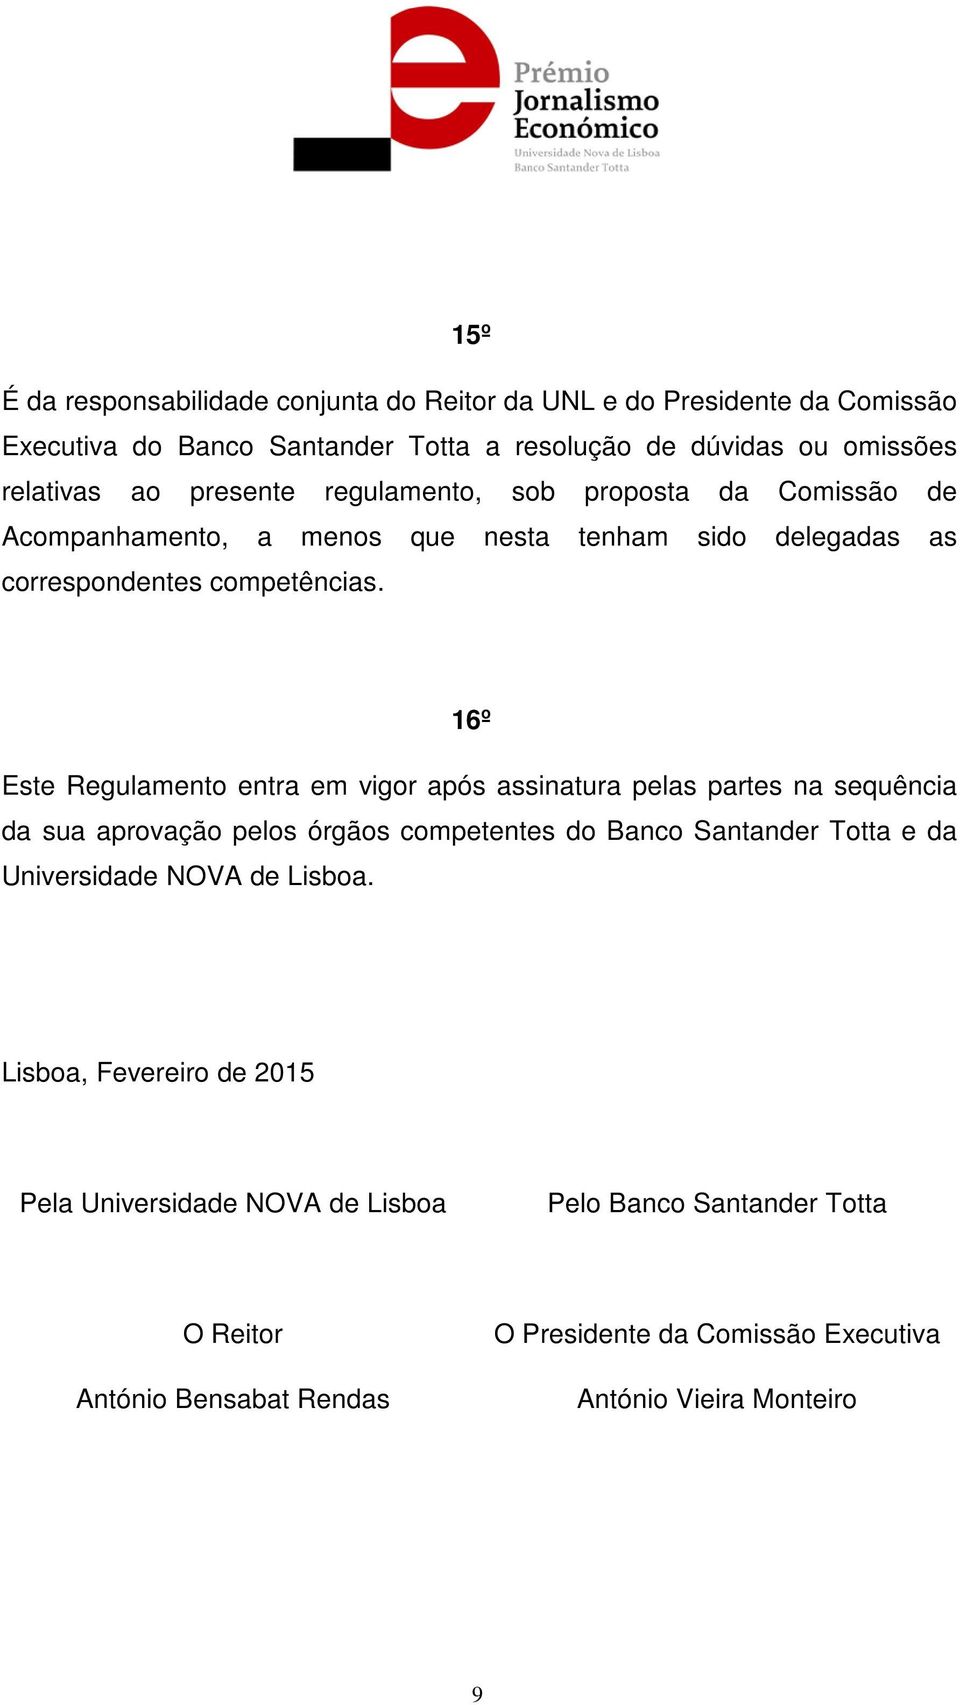 16º Este Regulamento entra em vigor após assinatura pelas partes na sequência da sua aprovação pelos órgãos competentes do Banco Santander Totta e da Universidade